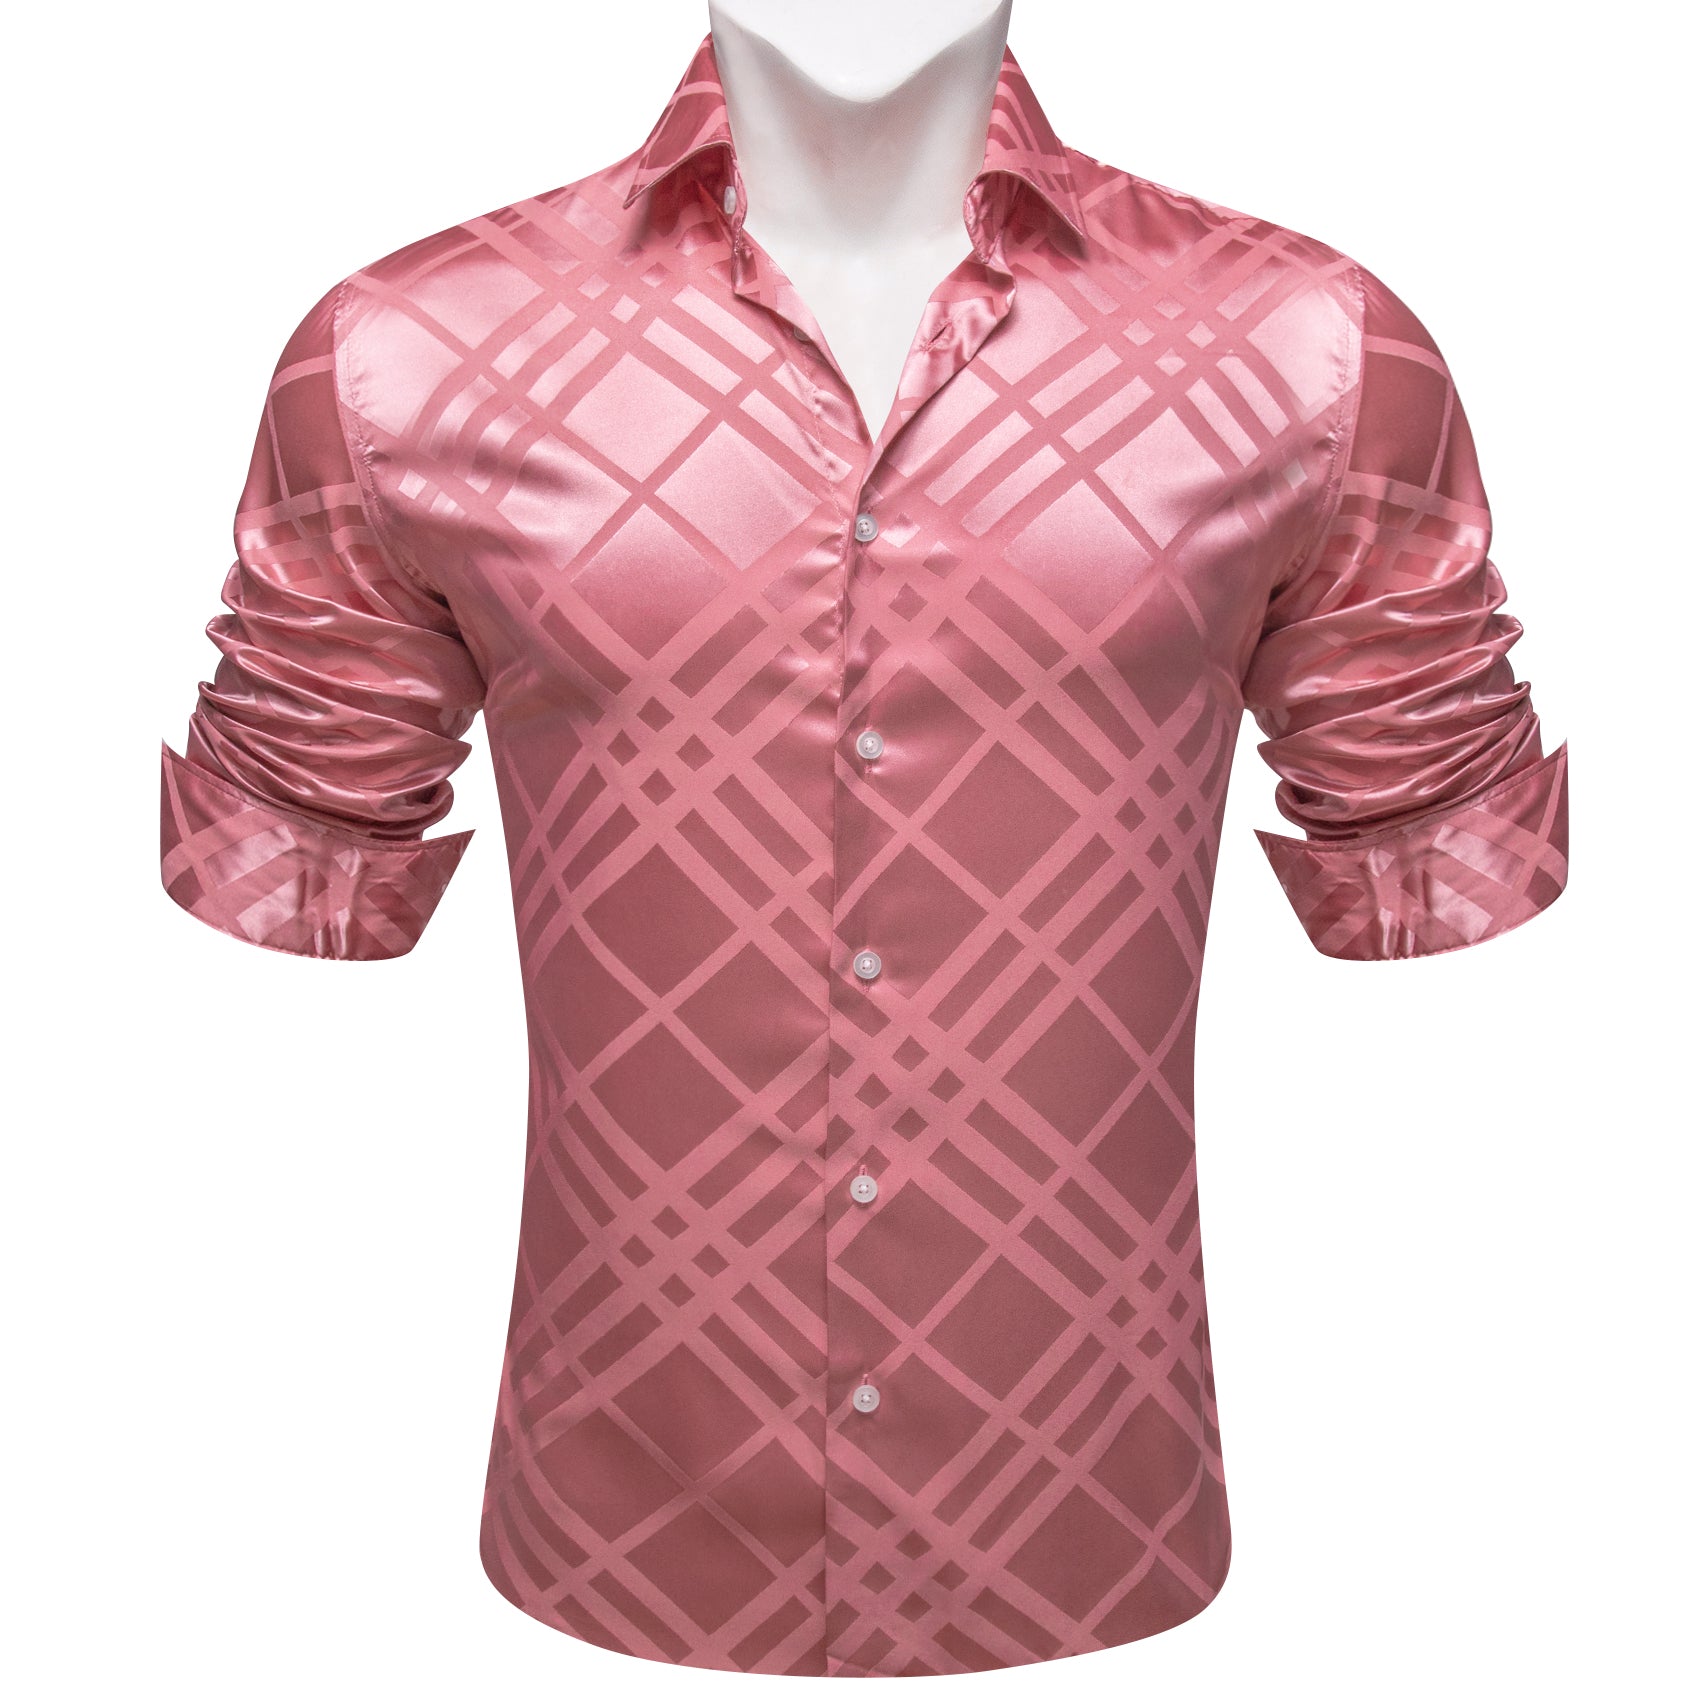 Barry.wang Pink Striped Silk Men's Shirt